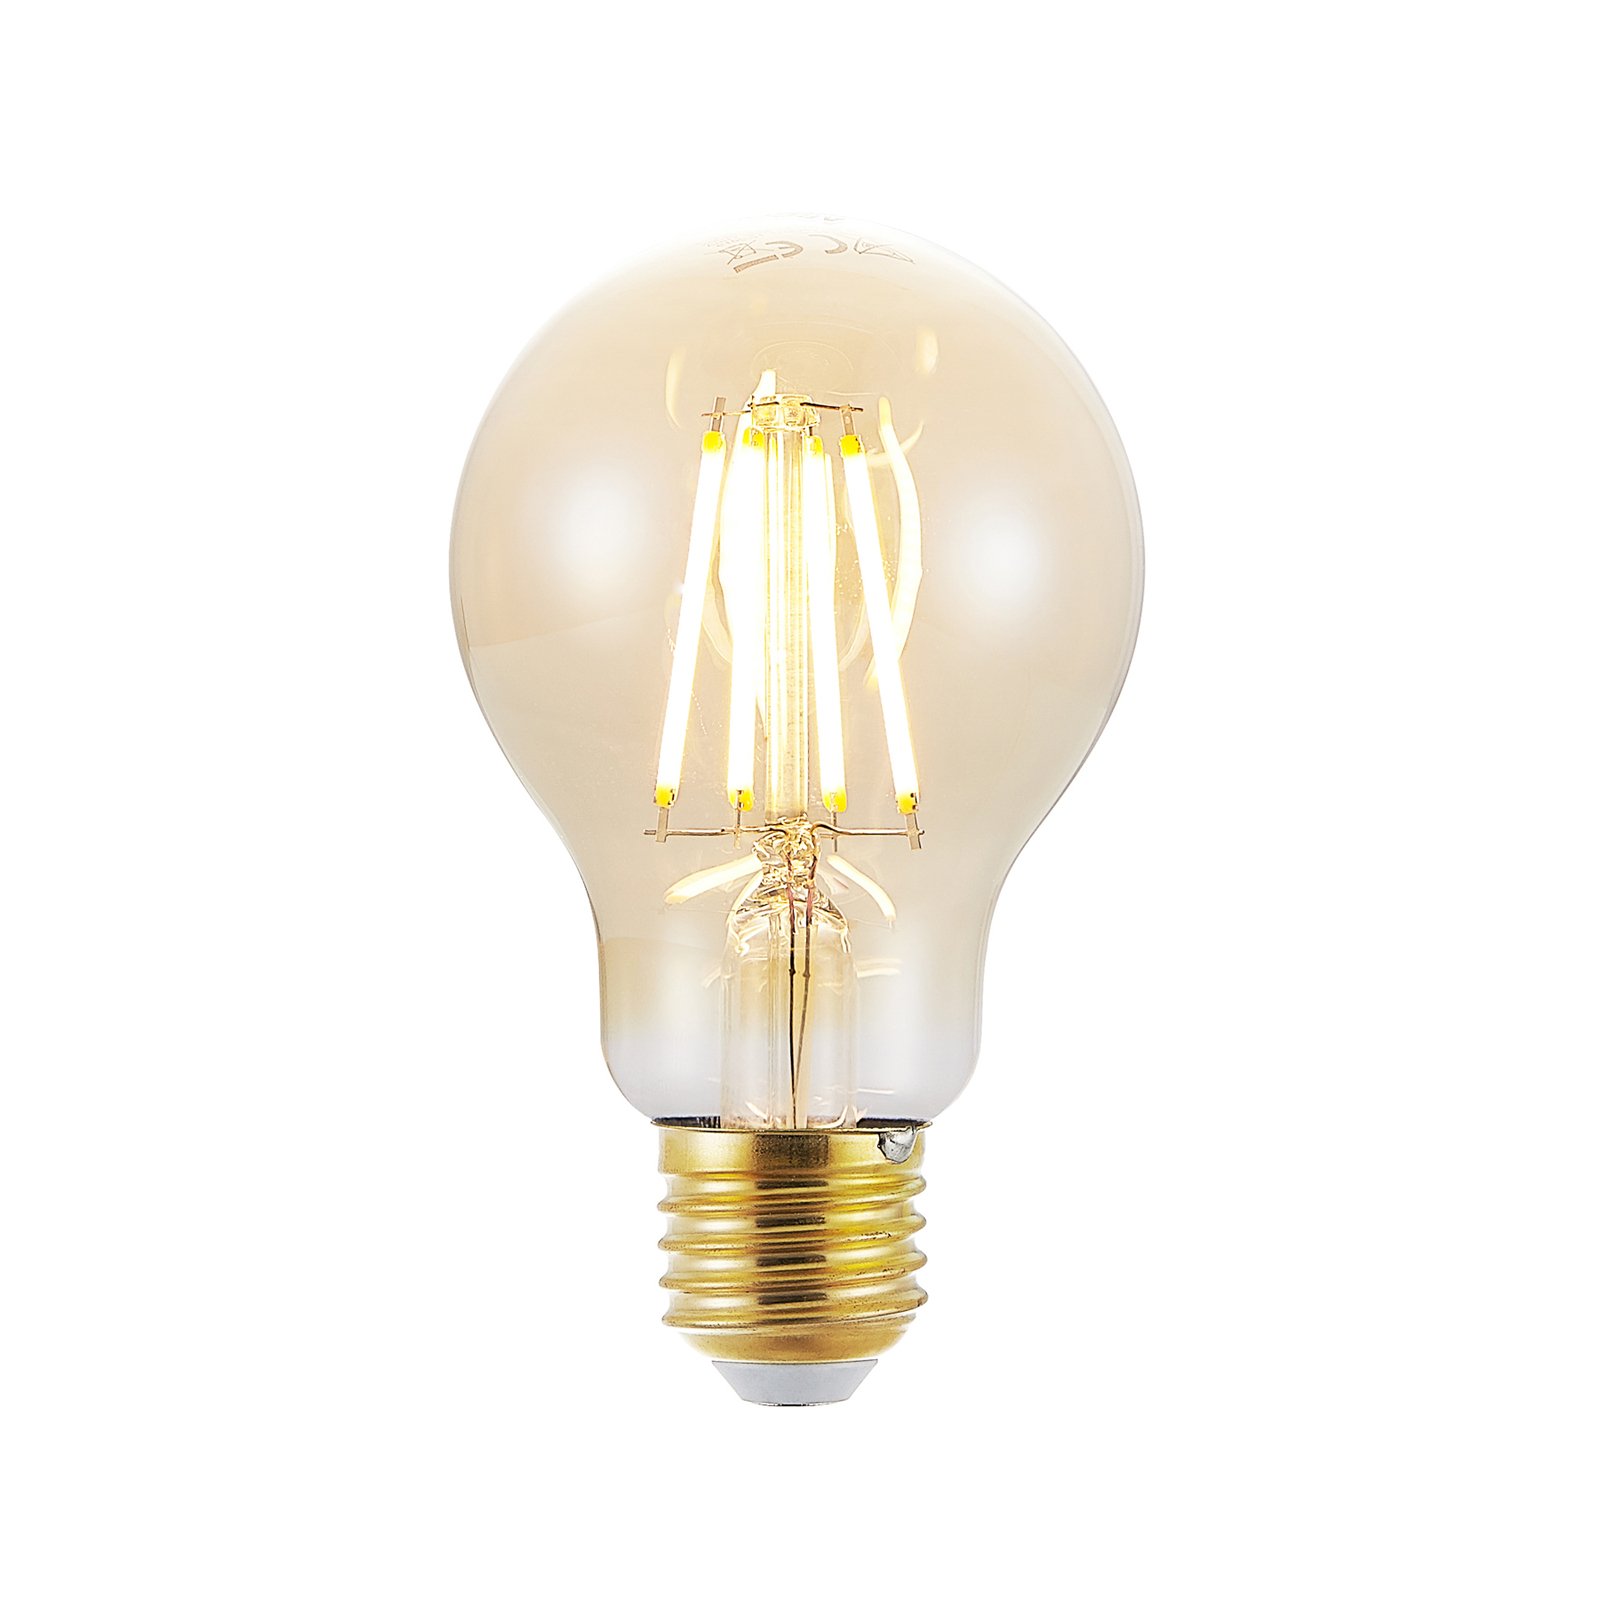 LED bulb E27 6.5 W 825 amber 3-level dimmer 3-pack